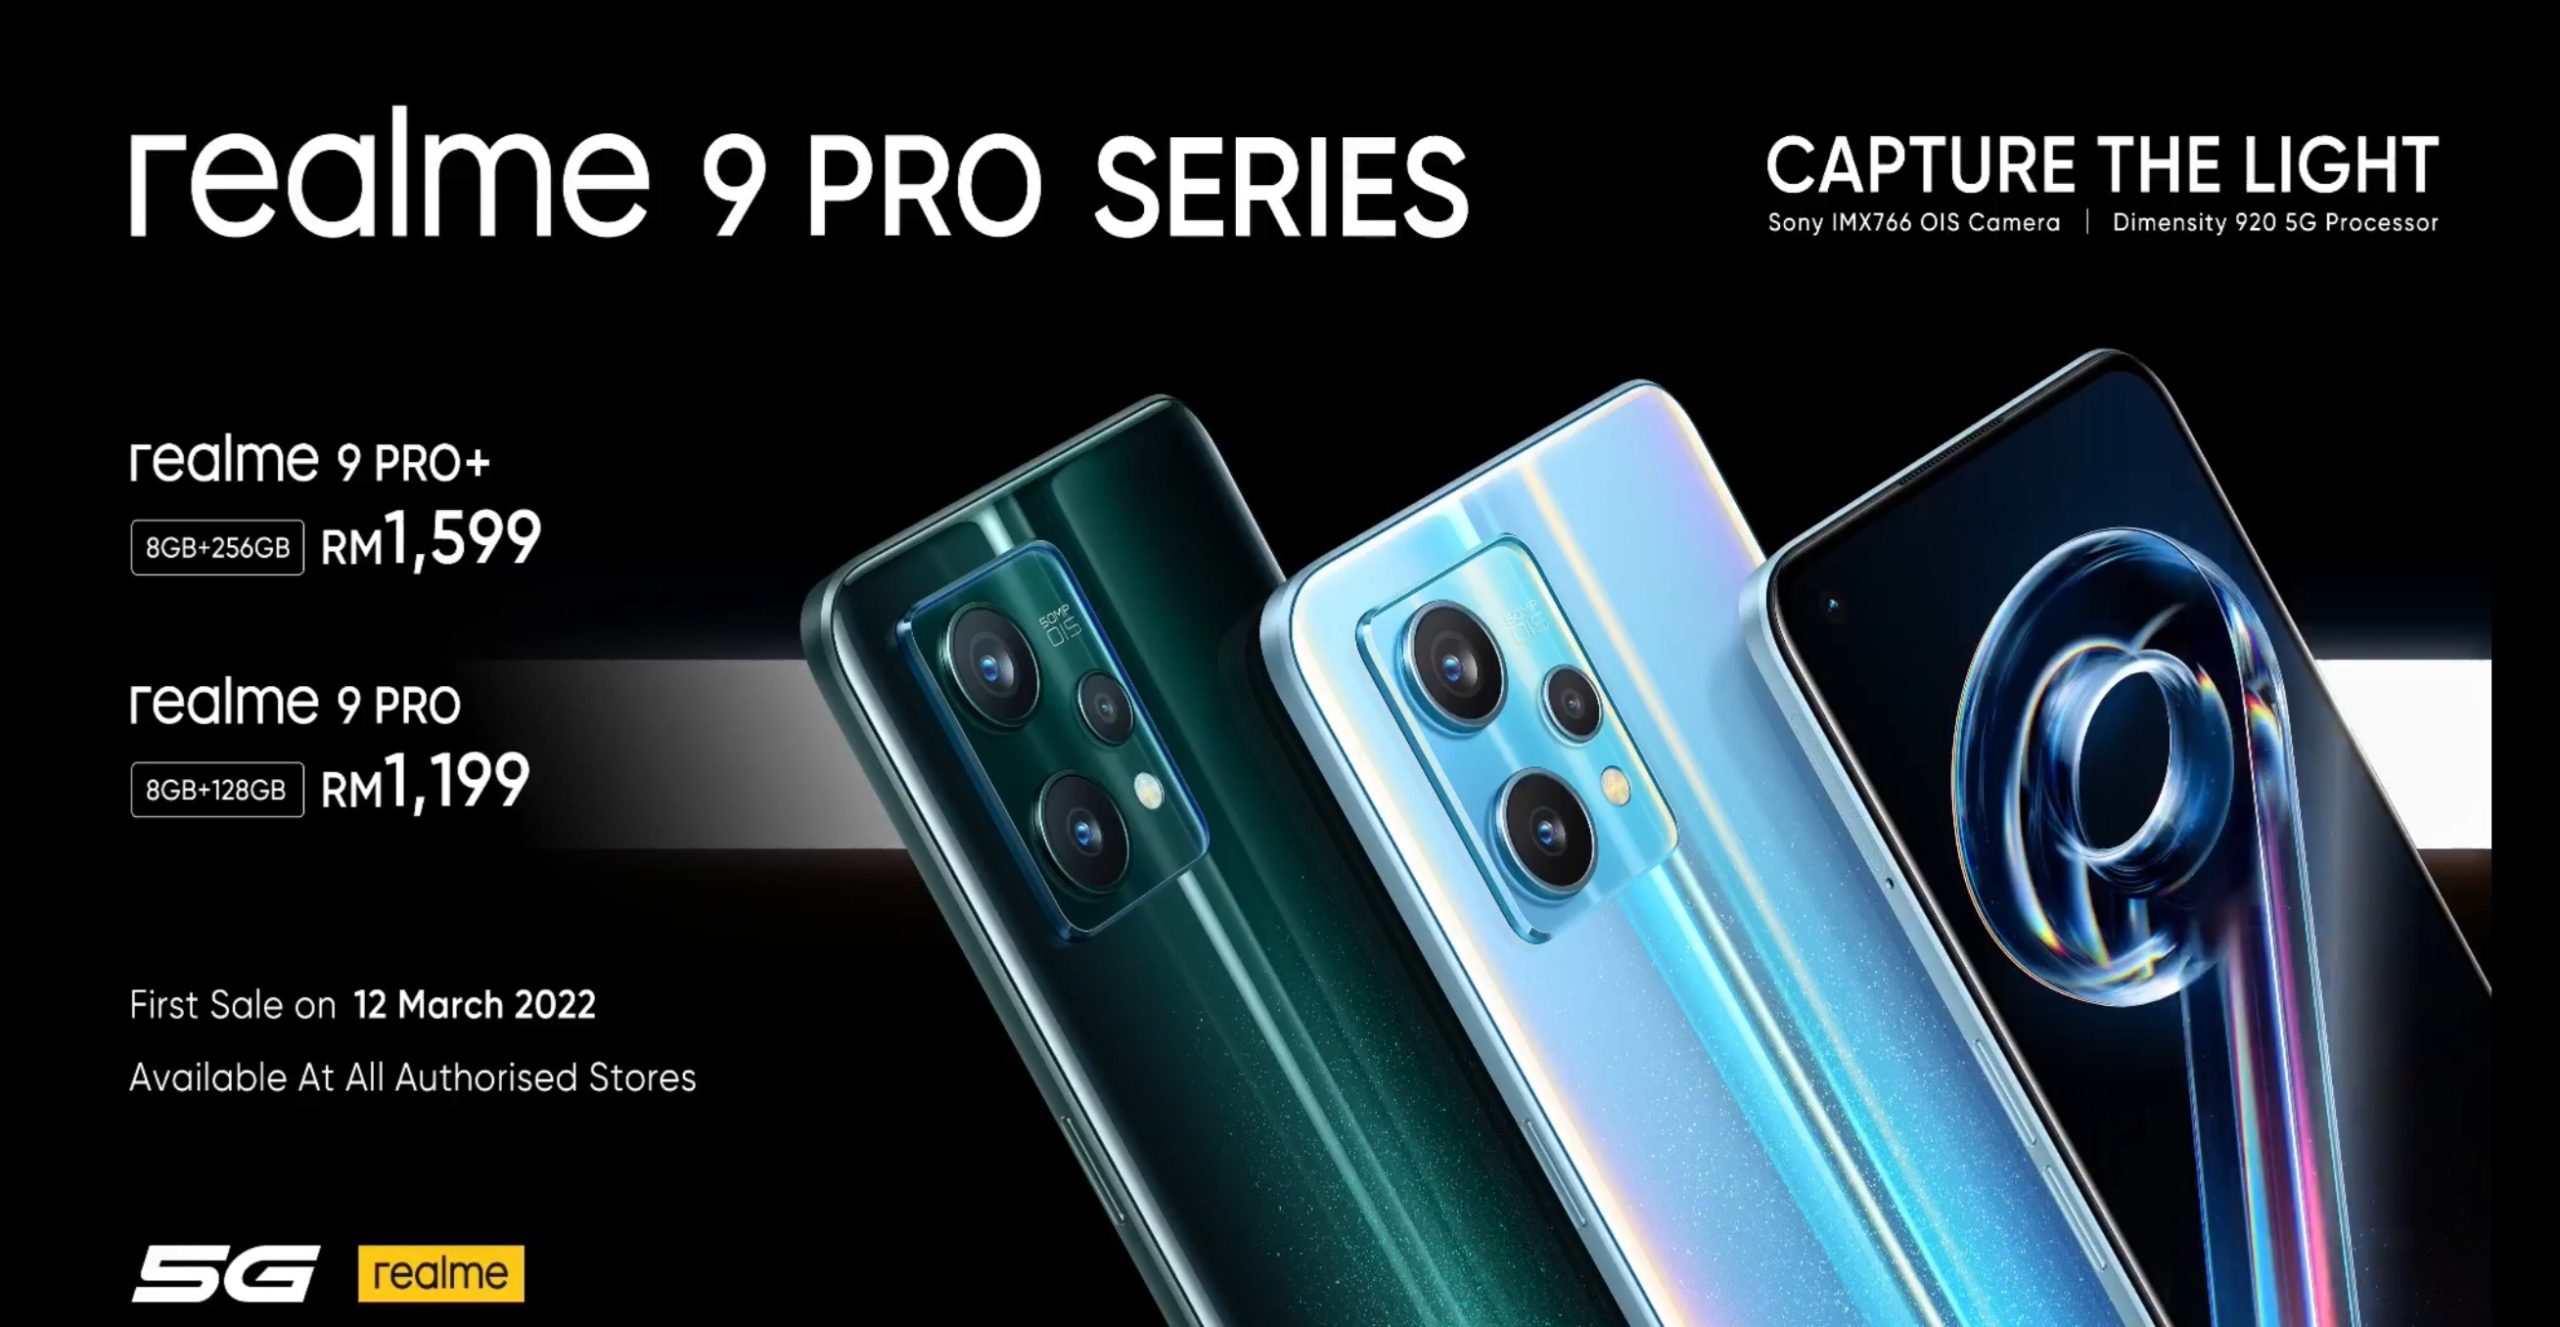 realme 9 Pro+ kini rasmi di Malaysia pada harga RM 1,599 7